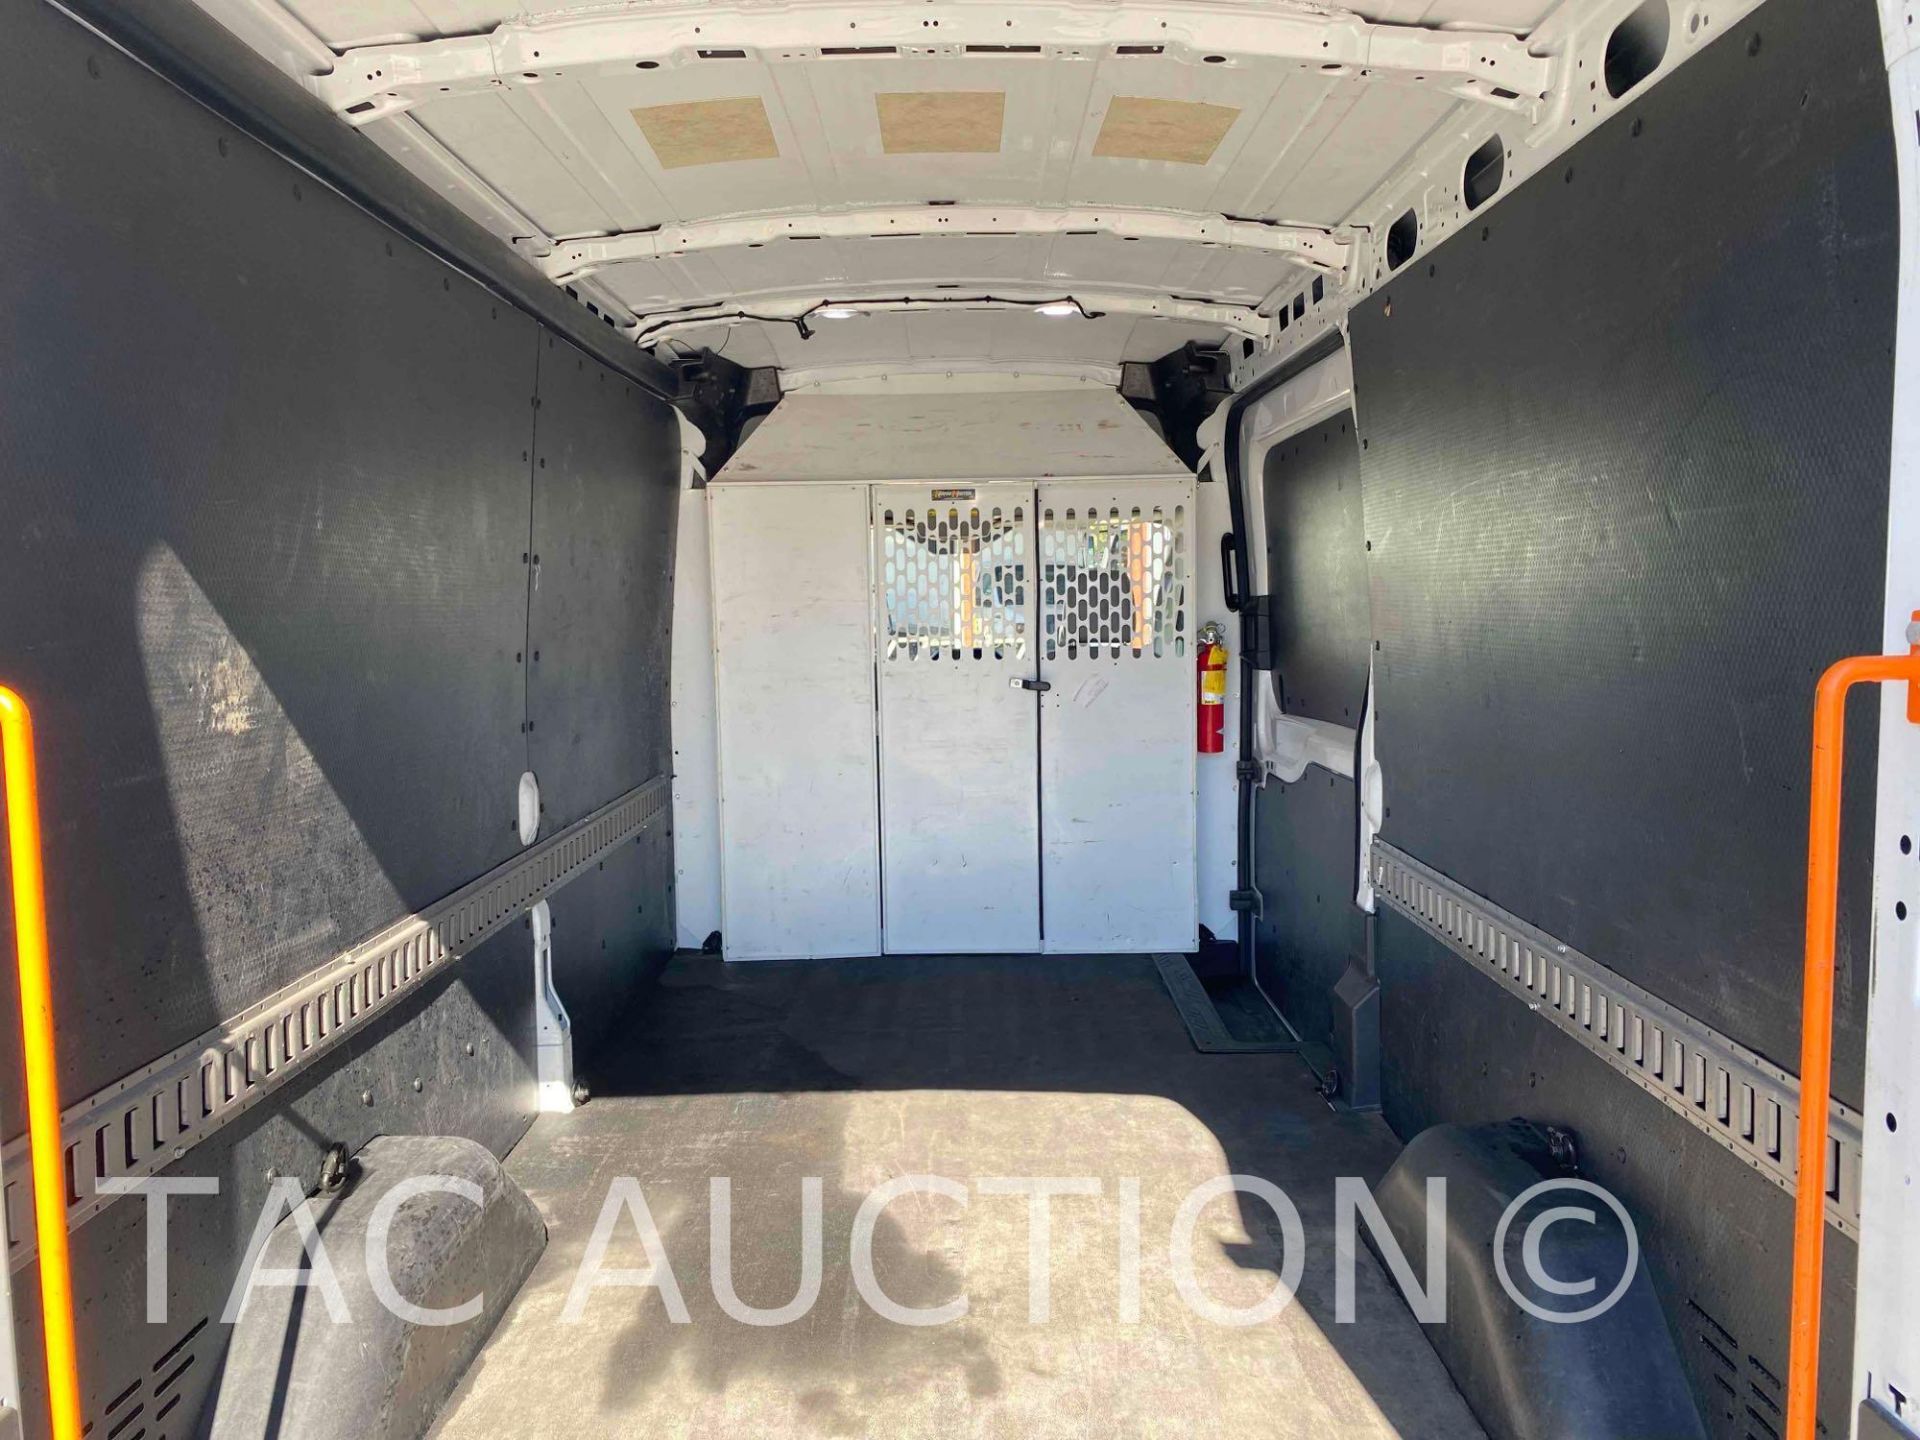 2019 Ford Transit 150 Cargo Van - Image 15 of 49